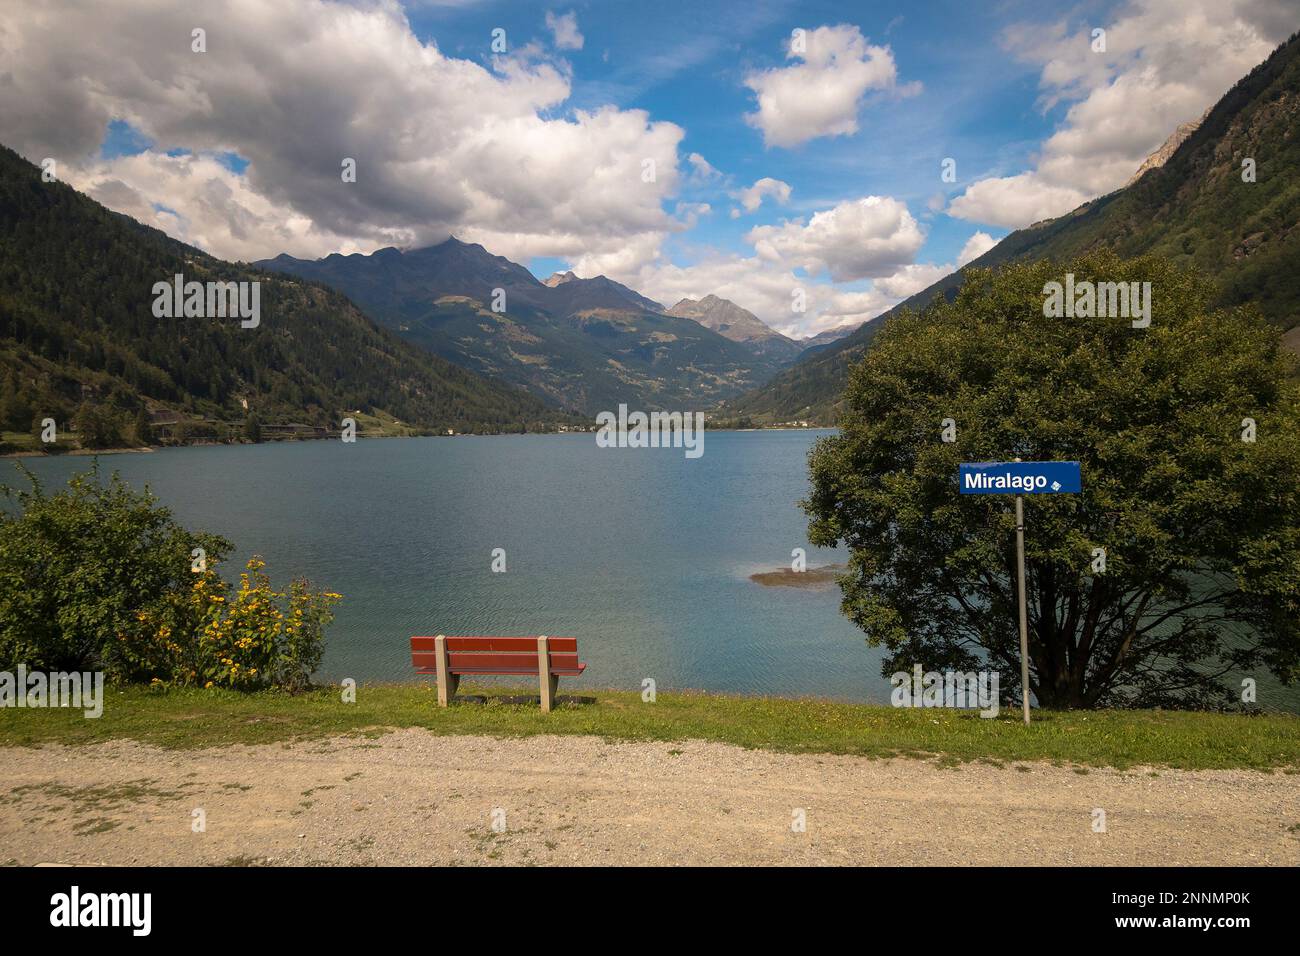 Lago di Poschiavo avec plaque signalétique de Miralago dans le canton des Grisons, Suisse du Sud-est Banque D'Images